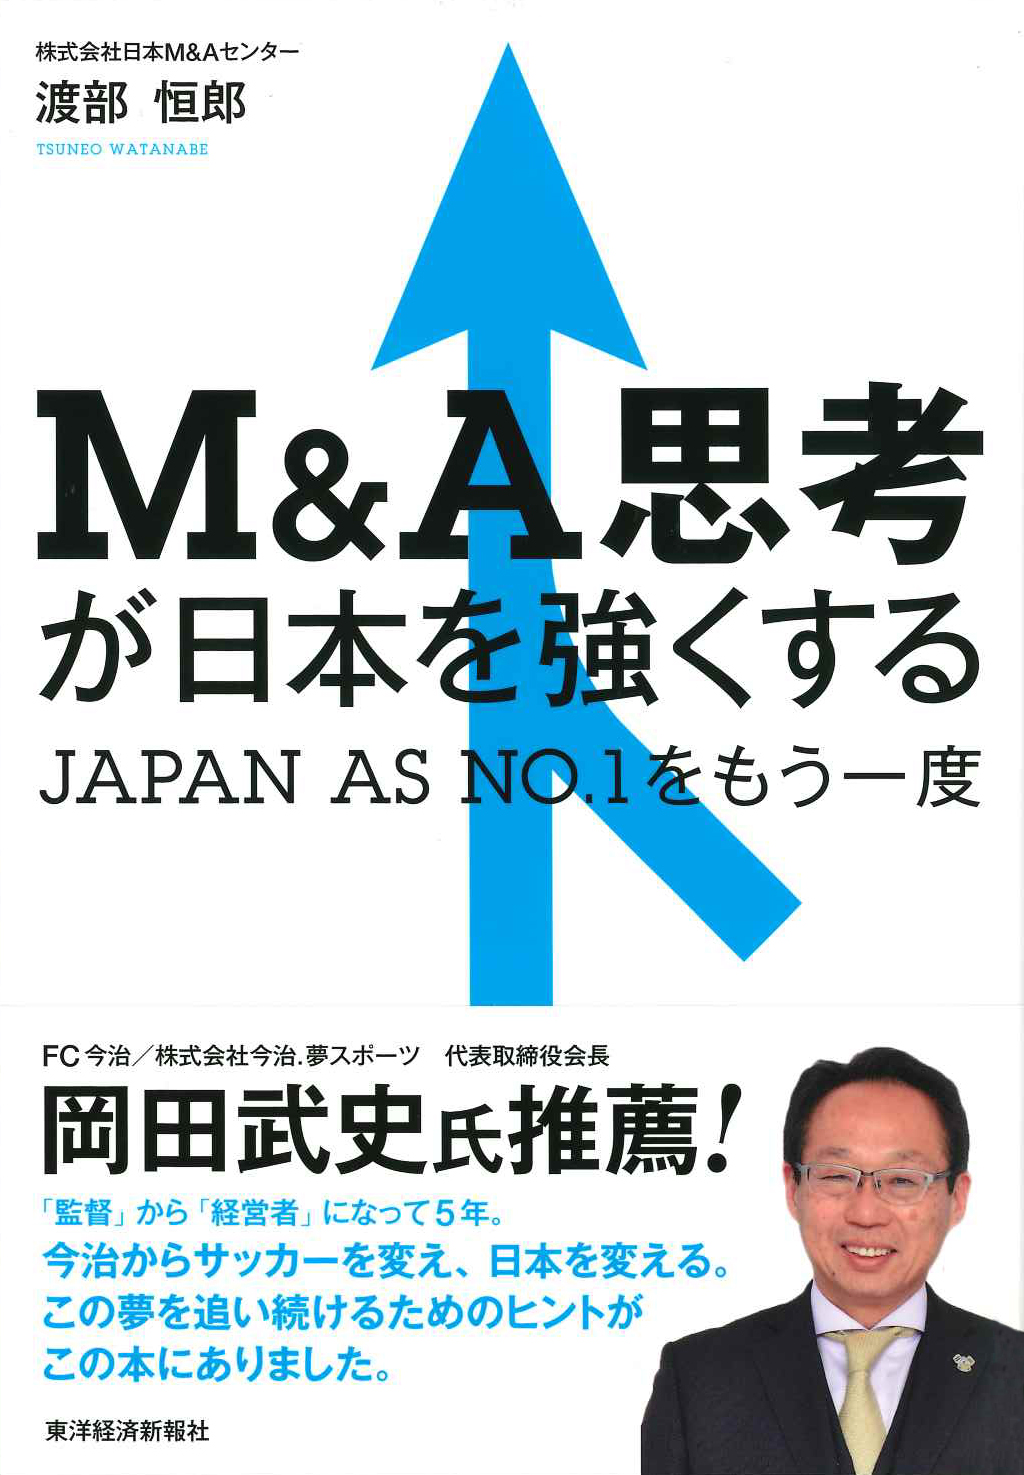 M&A思考が日本を強くする